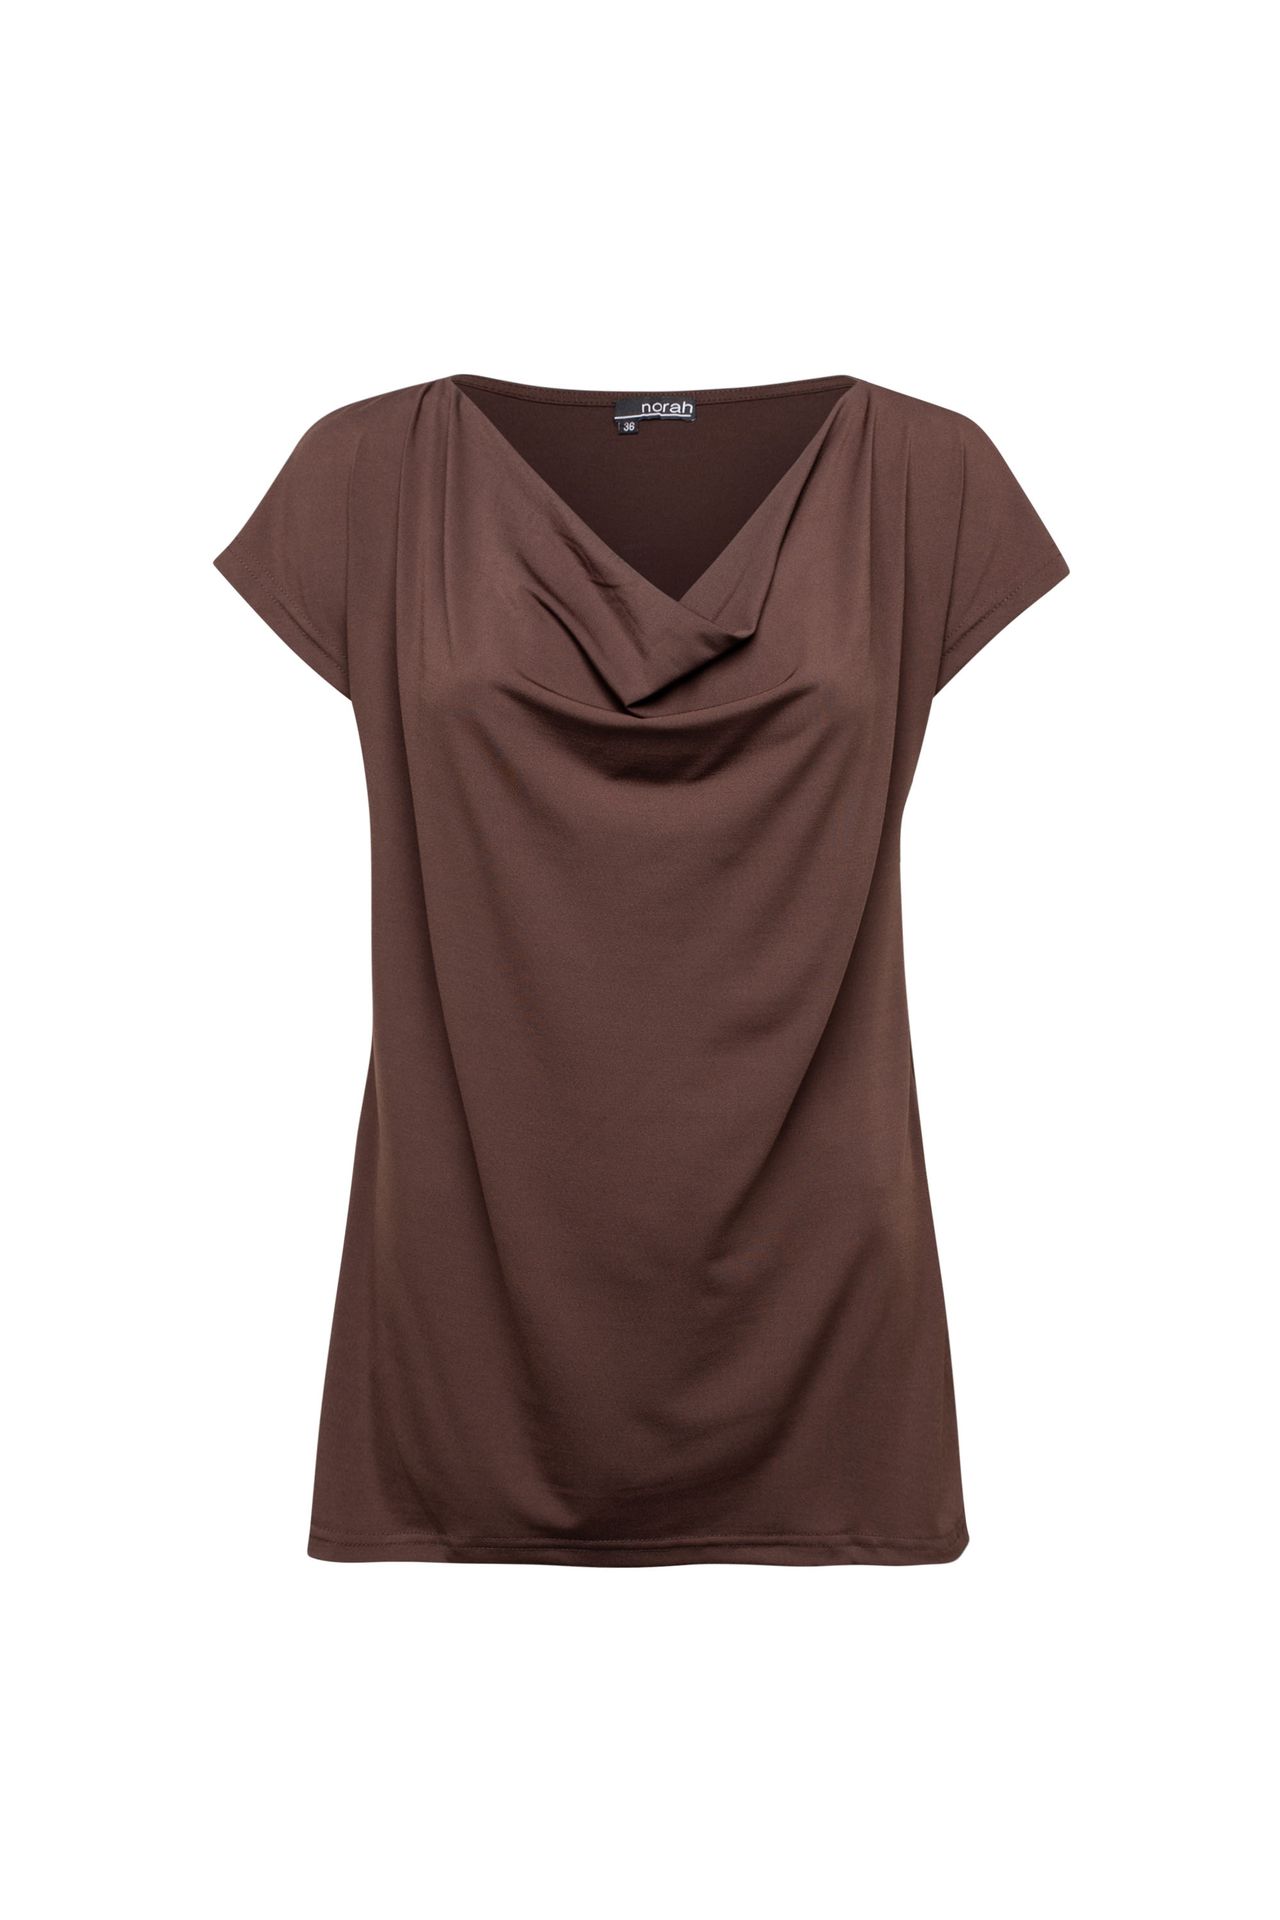 Shirt Bruin | Norah Dameskleding maat 36 48